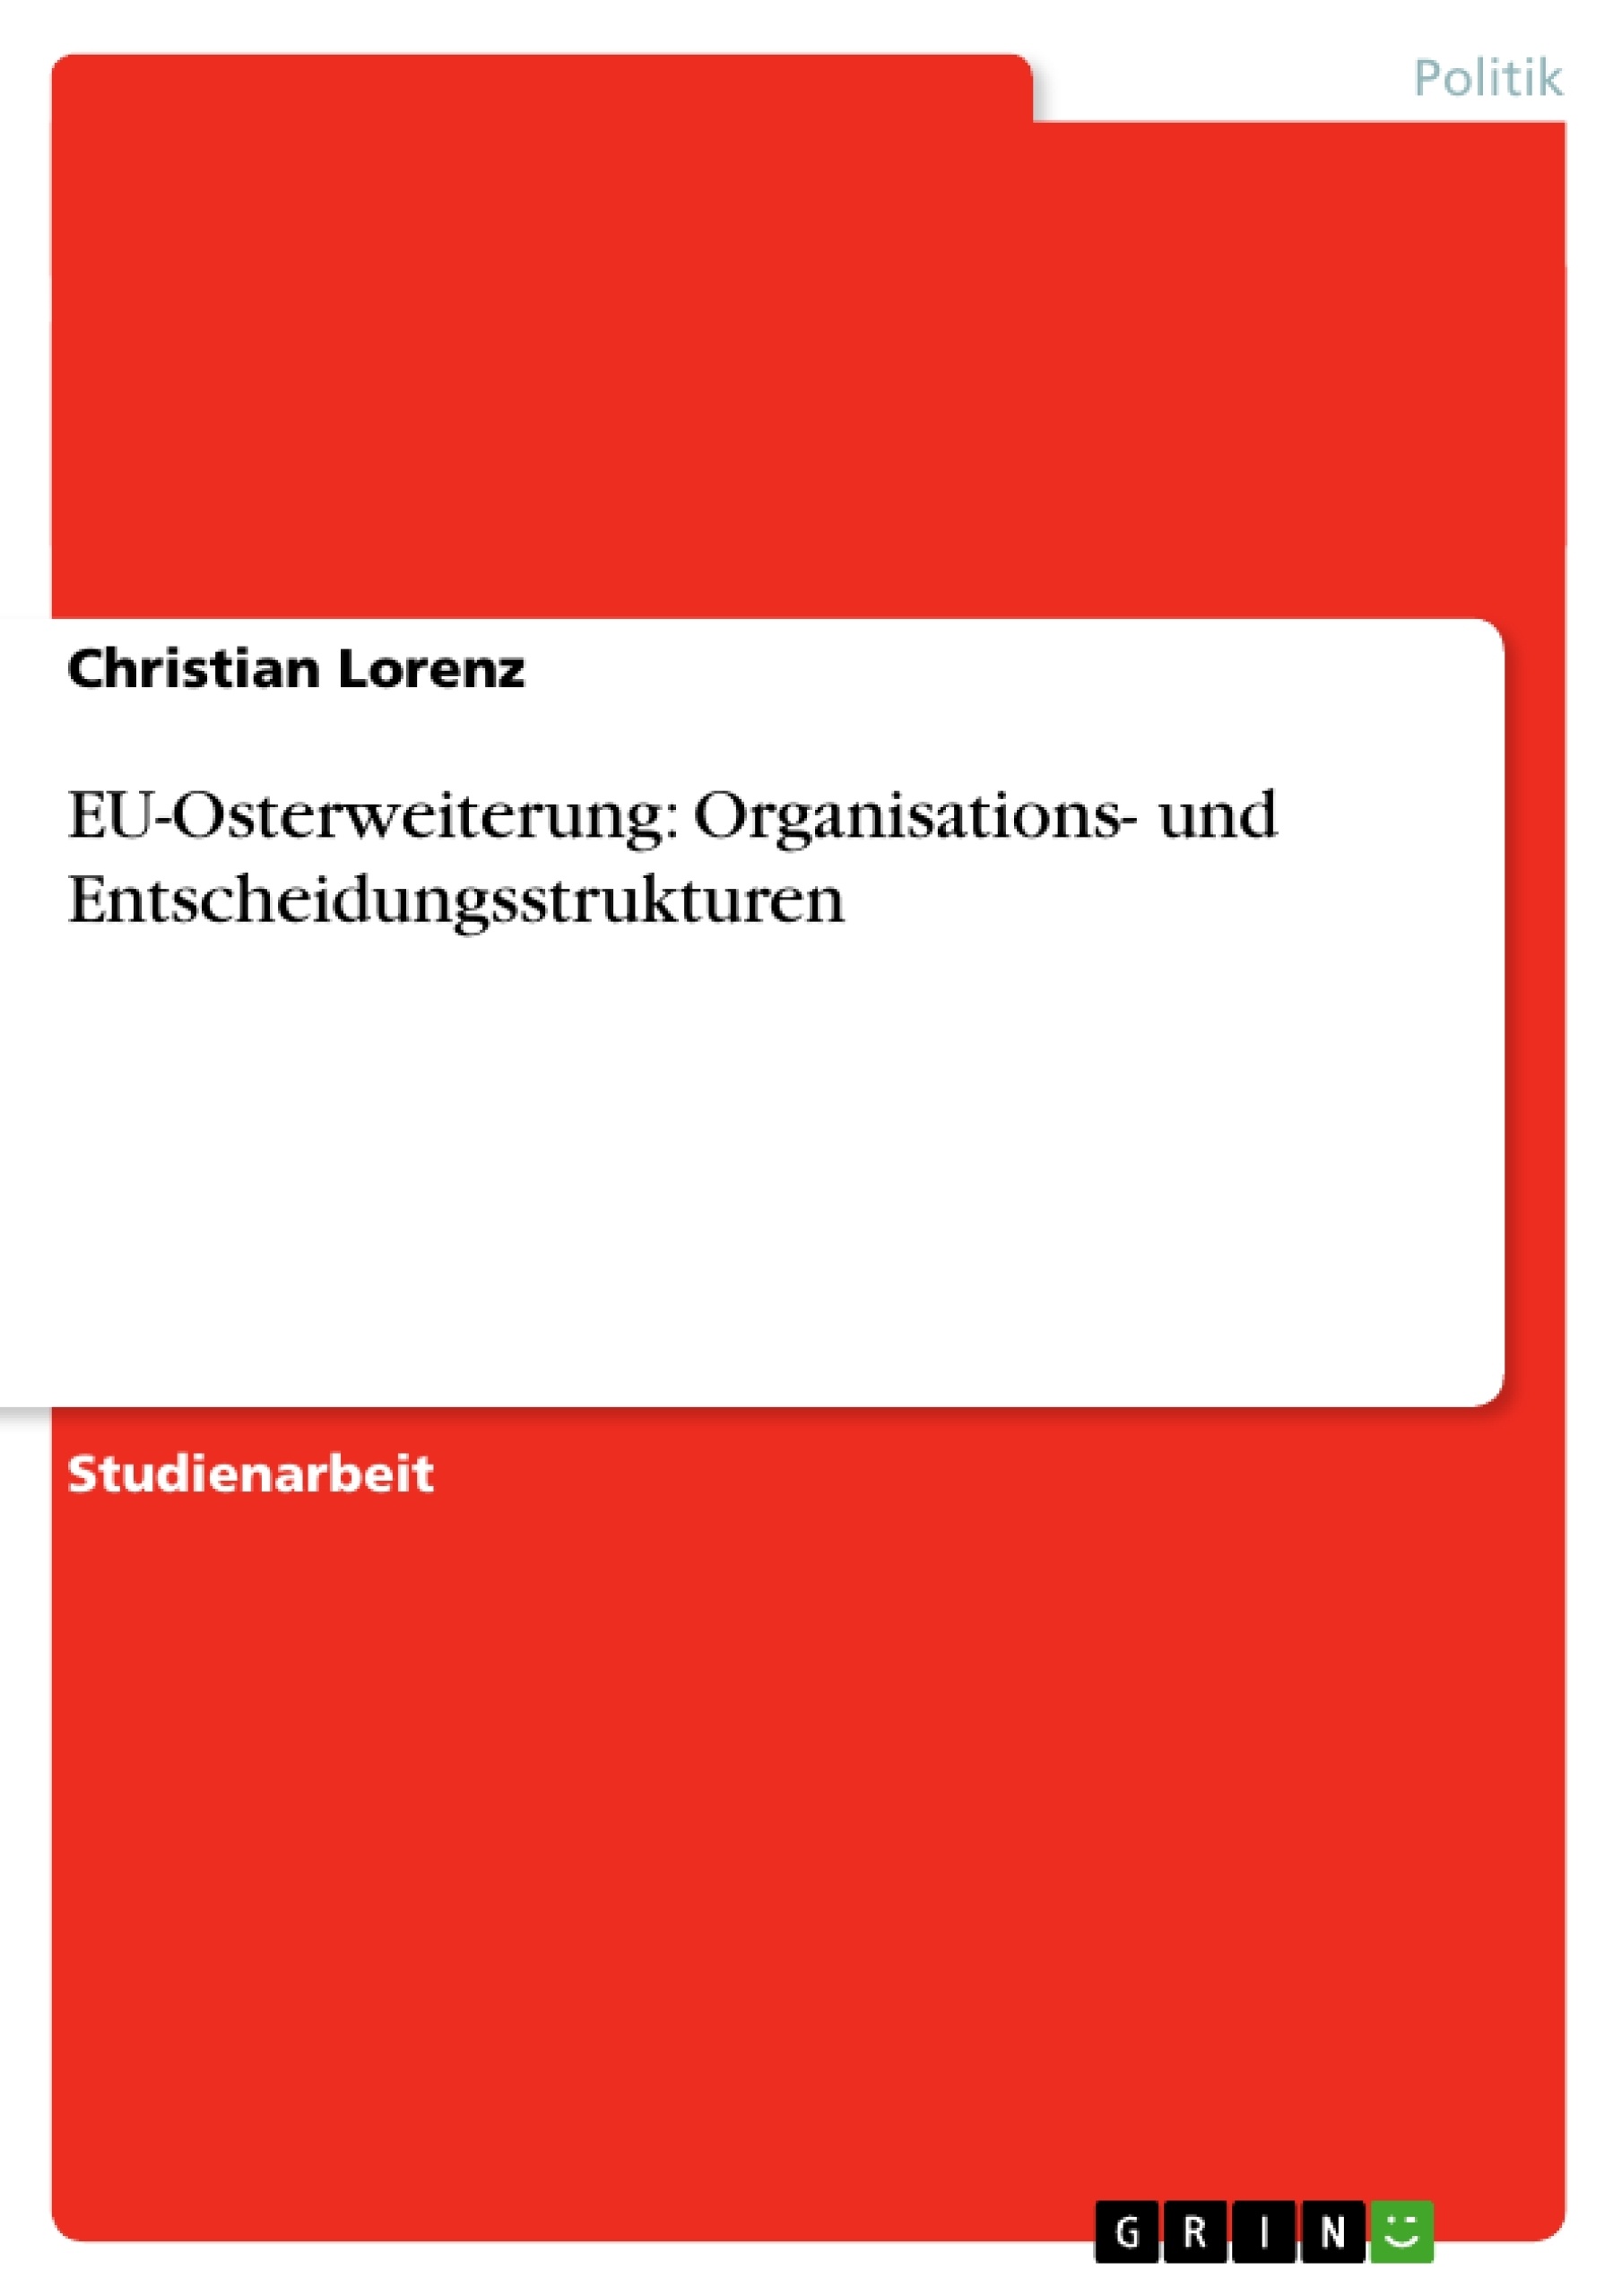 Title: EU-Osterweiterung: Organisations- und Entscheidungsstrukturen